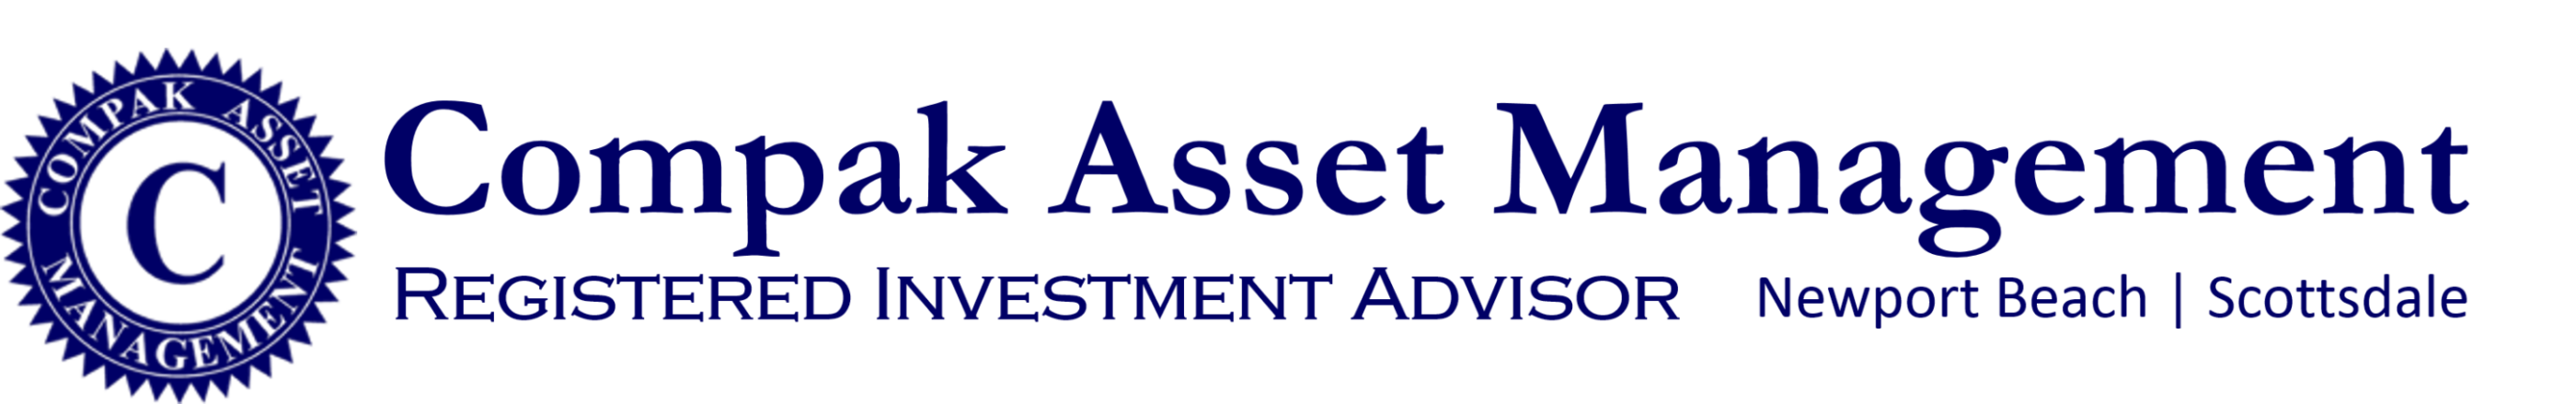 Compak Asset Management